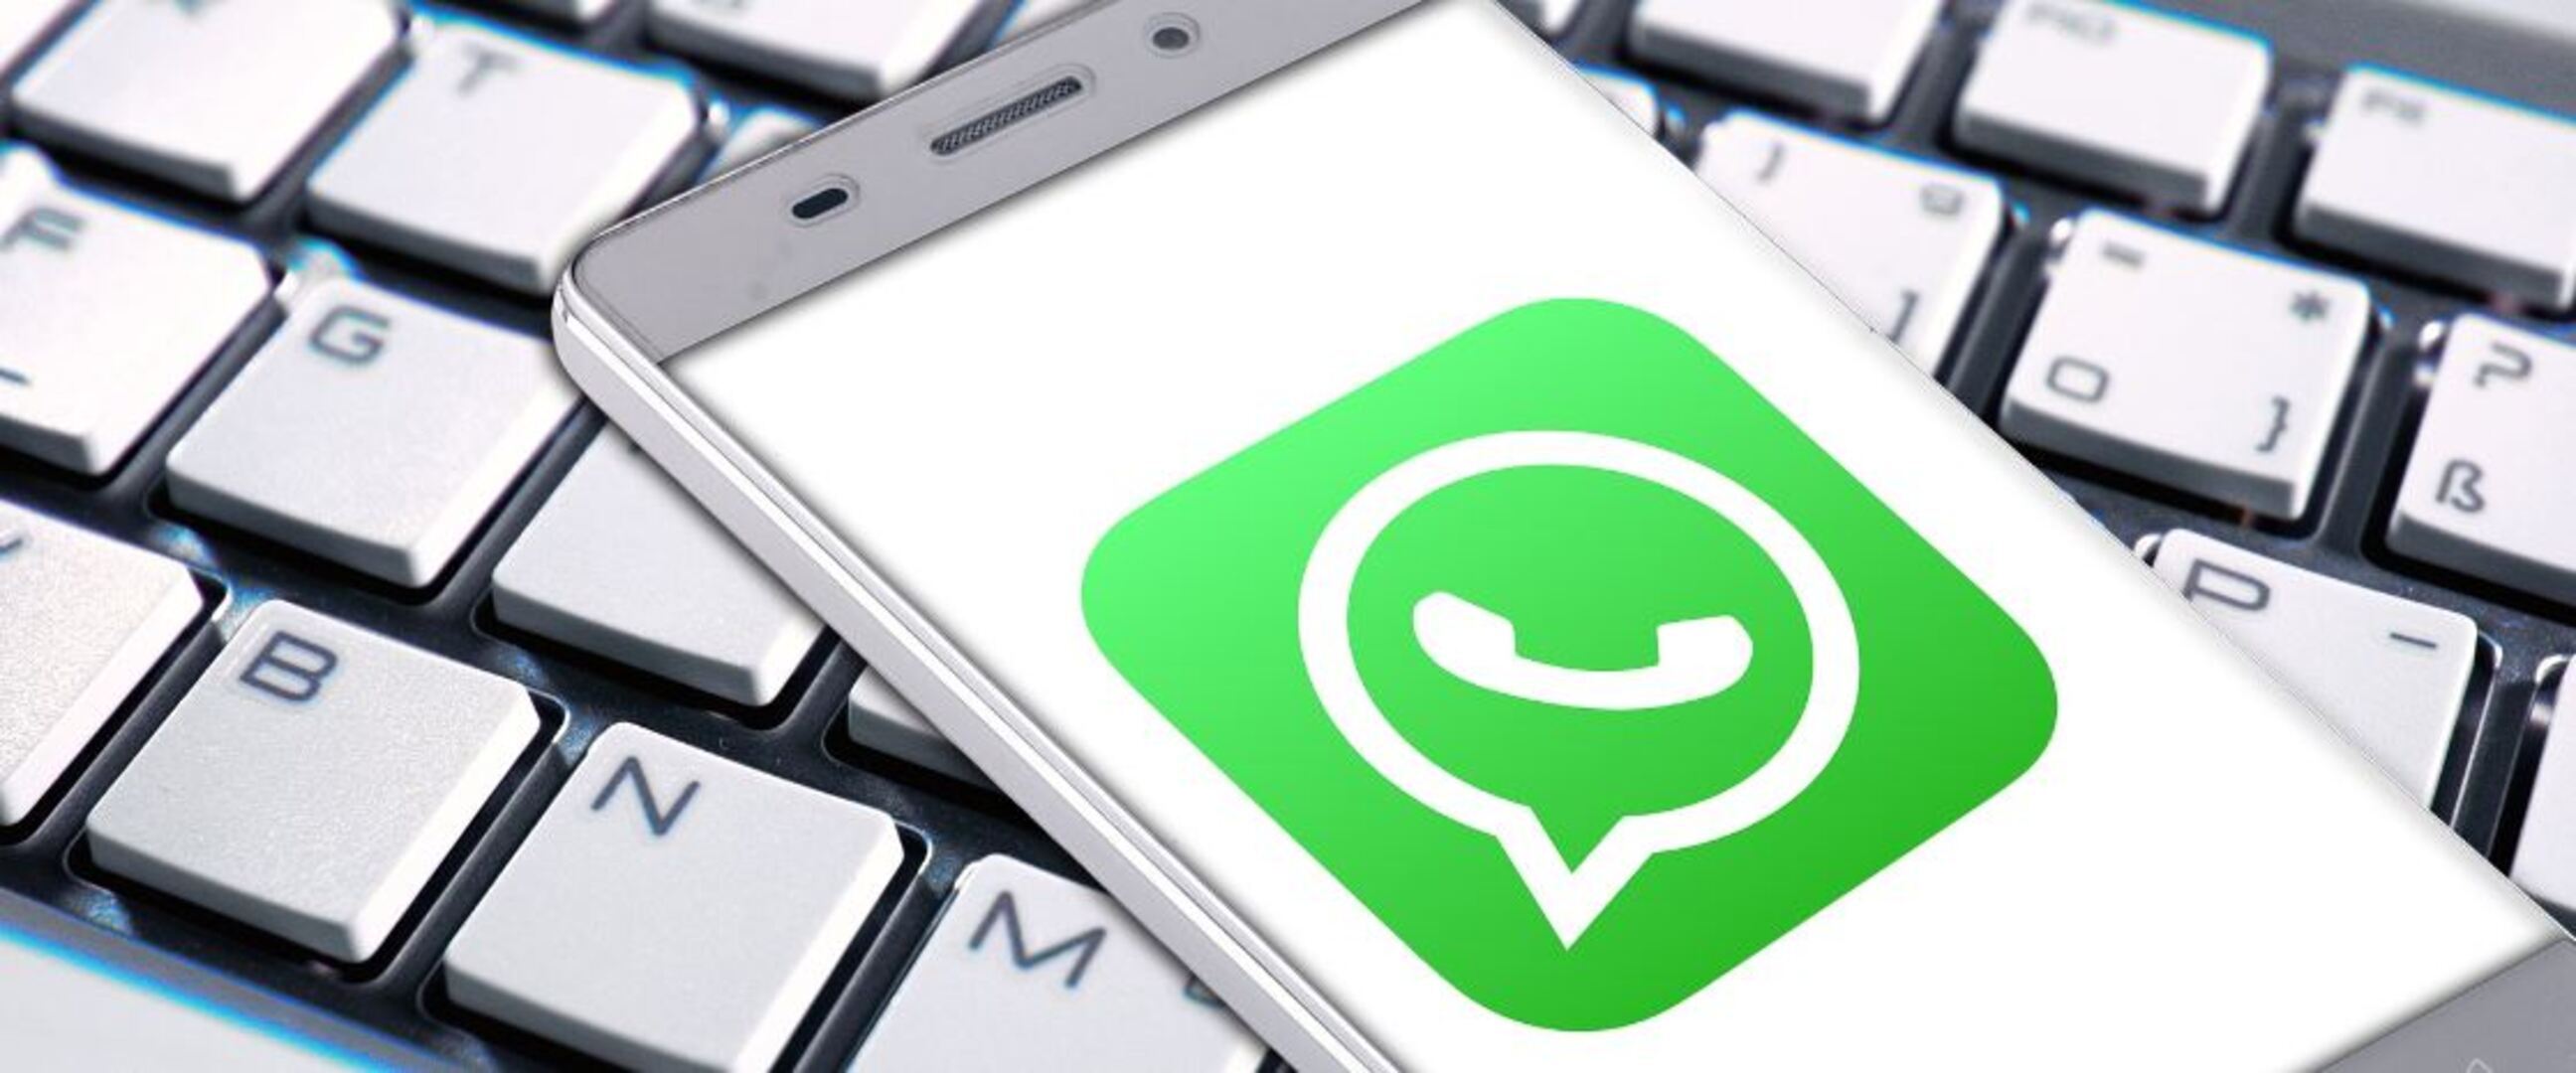 WhatsApp web akan rilis notifikasi panggilan dan sistem antarmuka baru